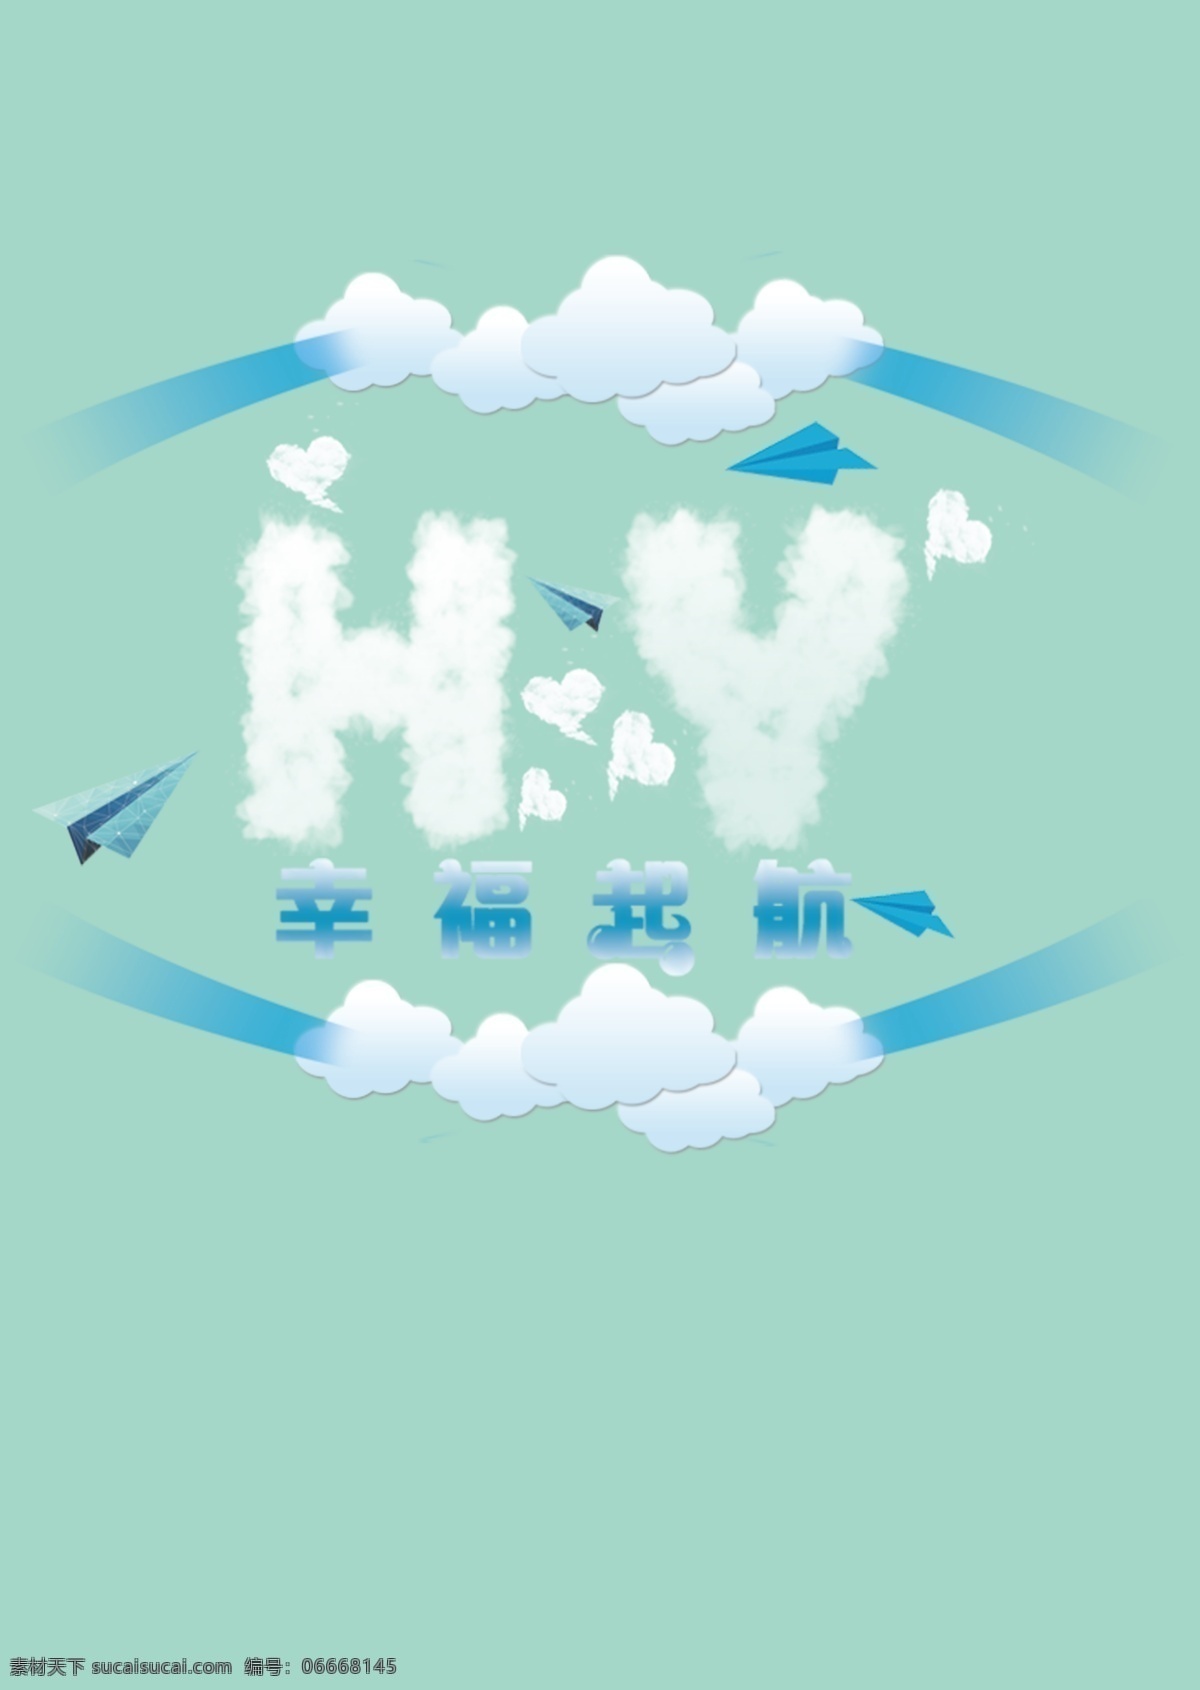 飞机 logo 迎宾 牌 飞机主题设计 翱翔 空中 爱情故事 一起幸福起航 青色 天蓝色